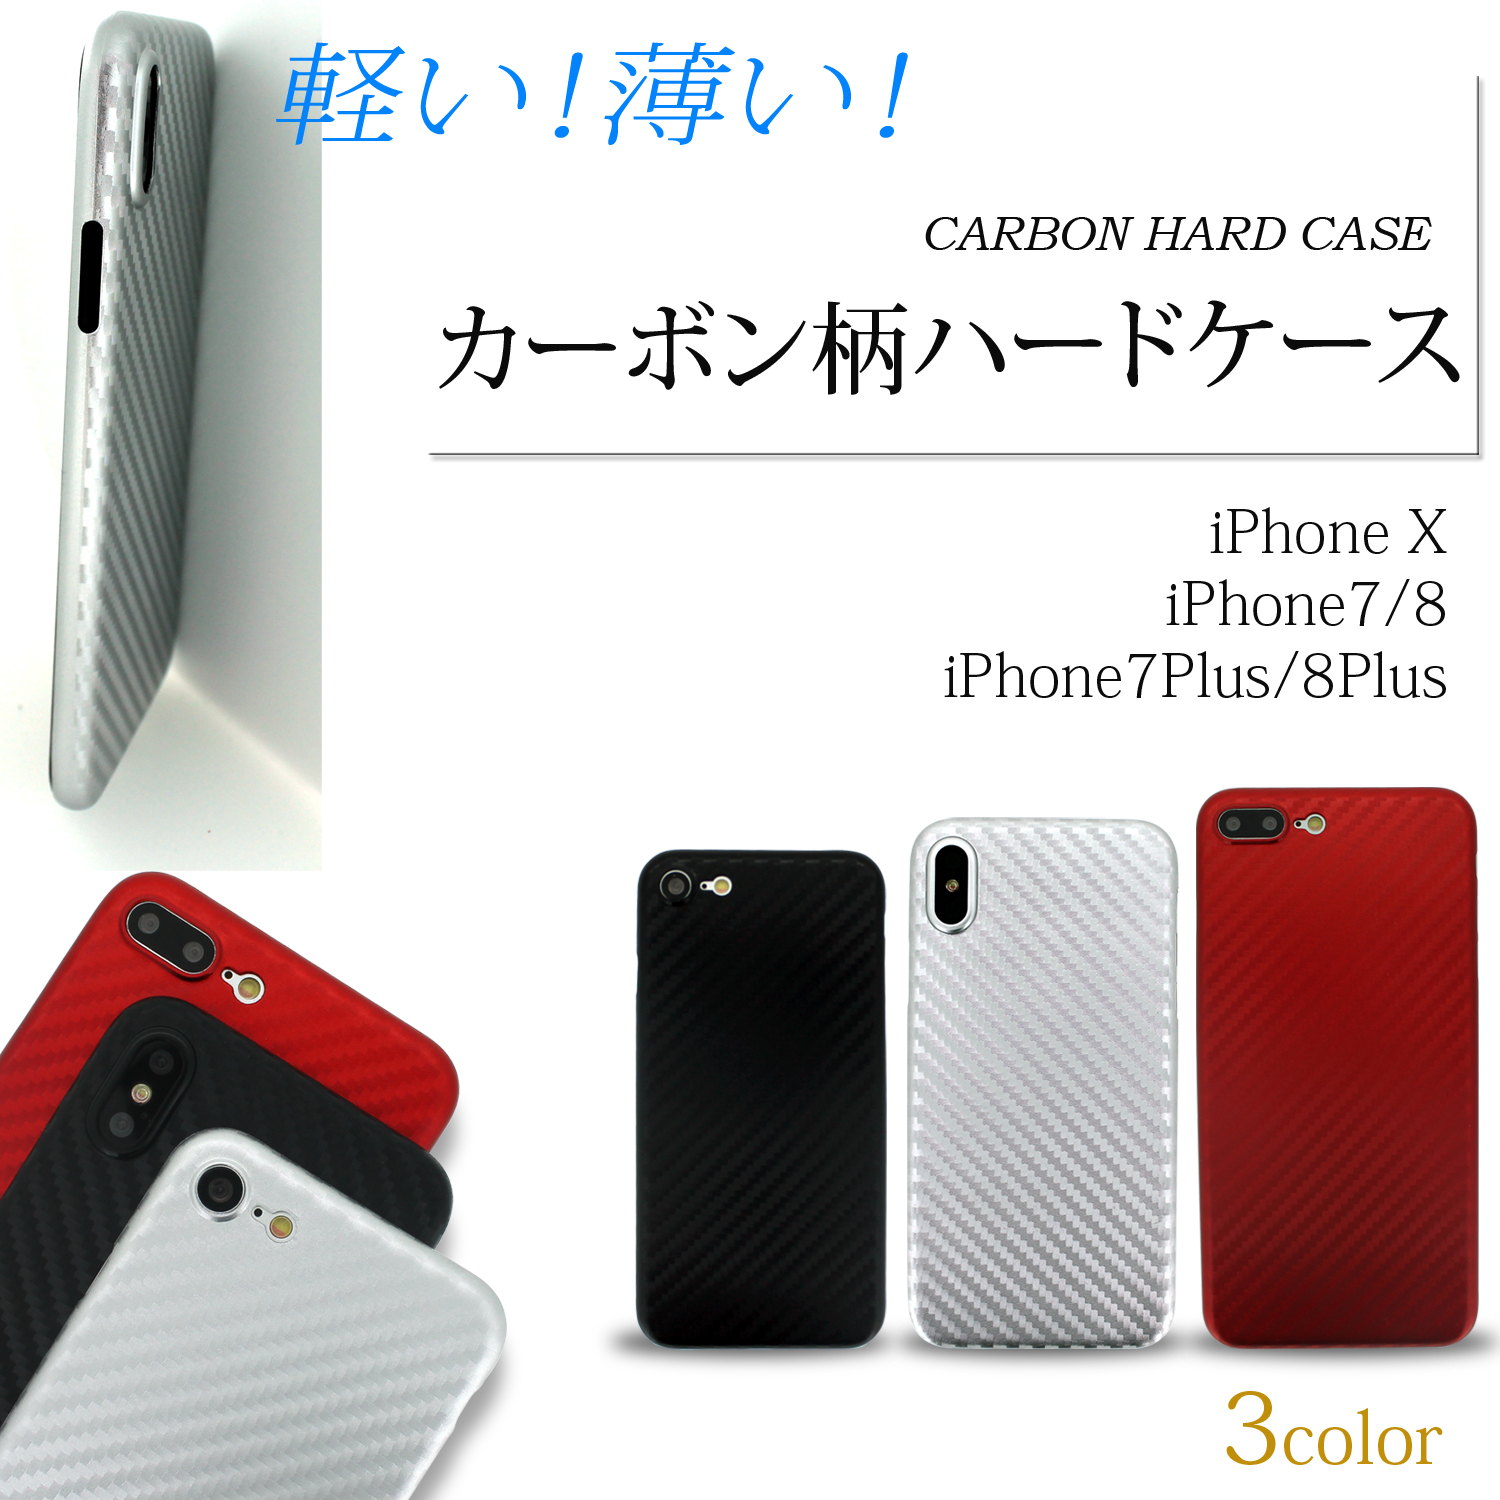 Iphone 7 8 送料無料 カーボン柄 ハードケース Type B 軽量 薄型 保護 カーボン クール かっこいい スタイリッシュ Iphone アイフォン アップル Apple ホワイトナッツ